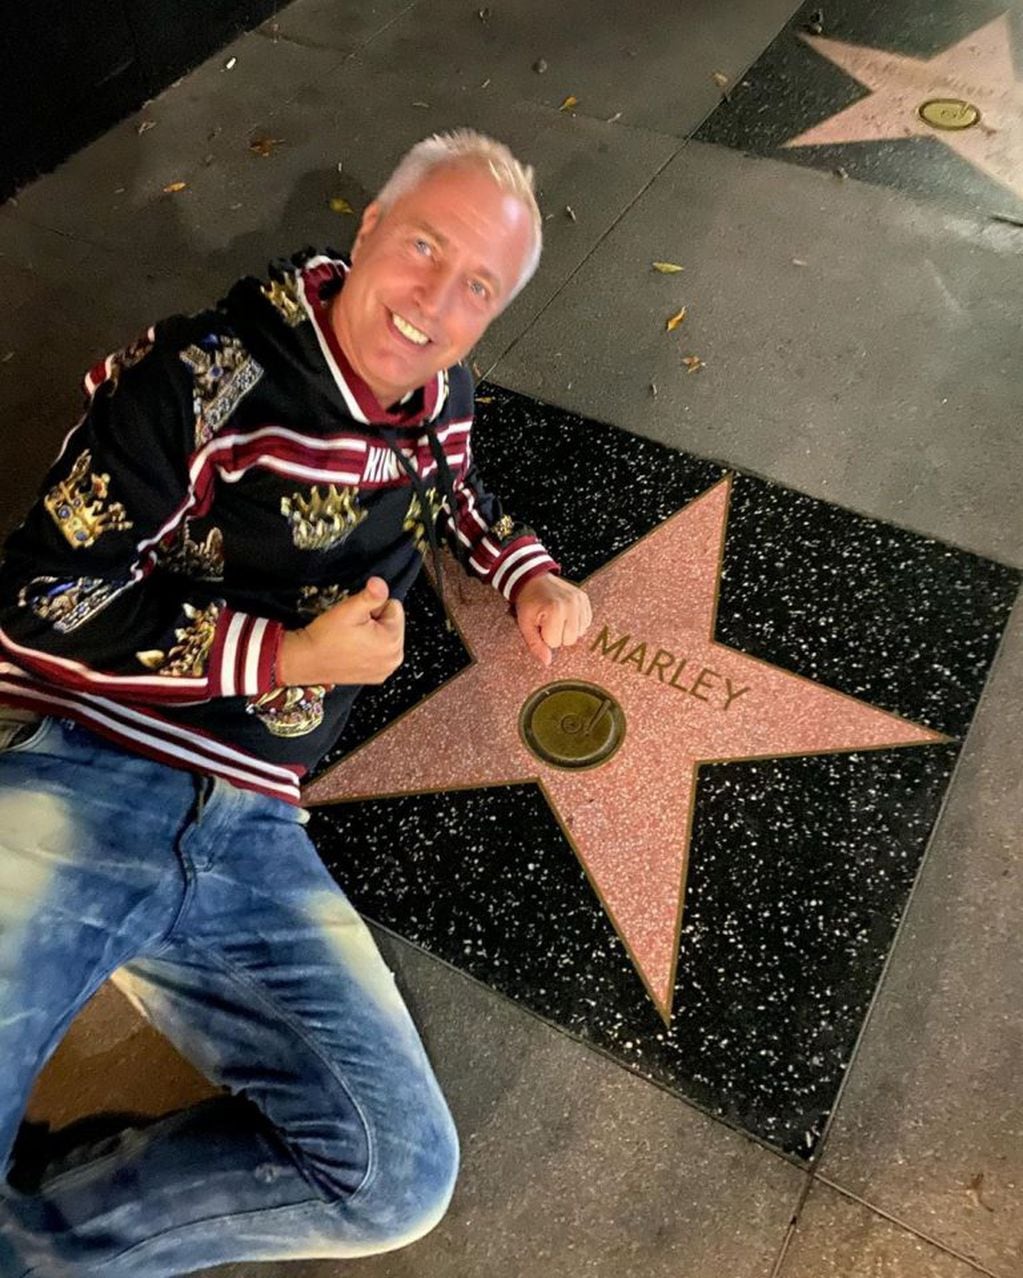 Marley mostró su estrella en el Paseo de la Fama de Hollywood (Foto: Instagram/ @Marley_ok)